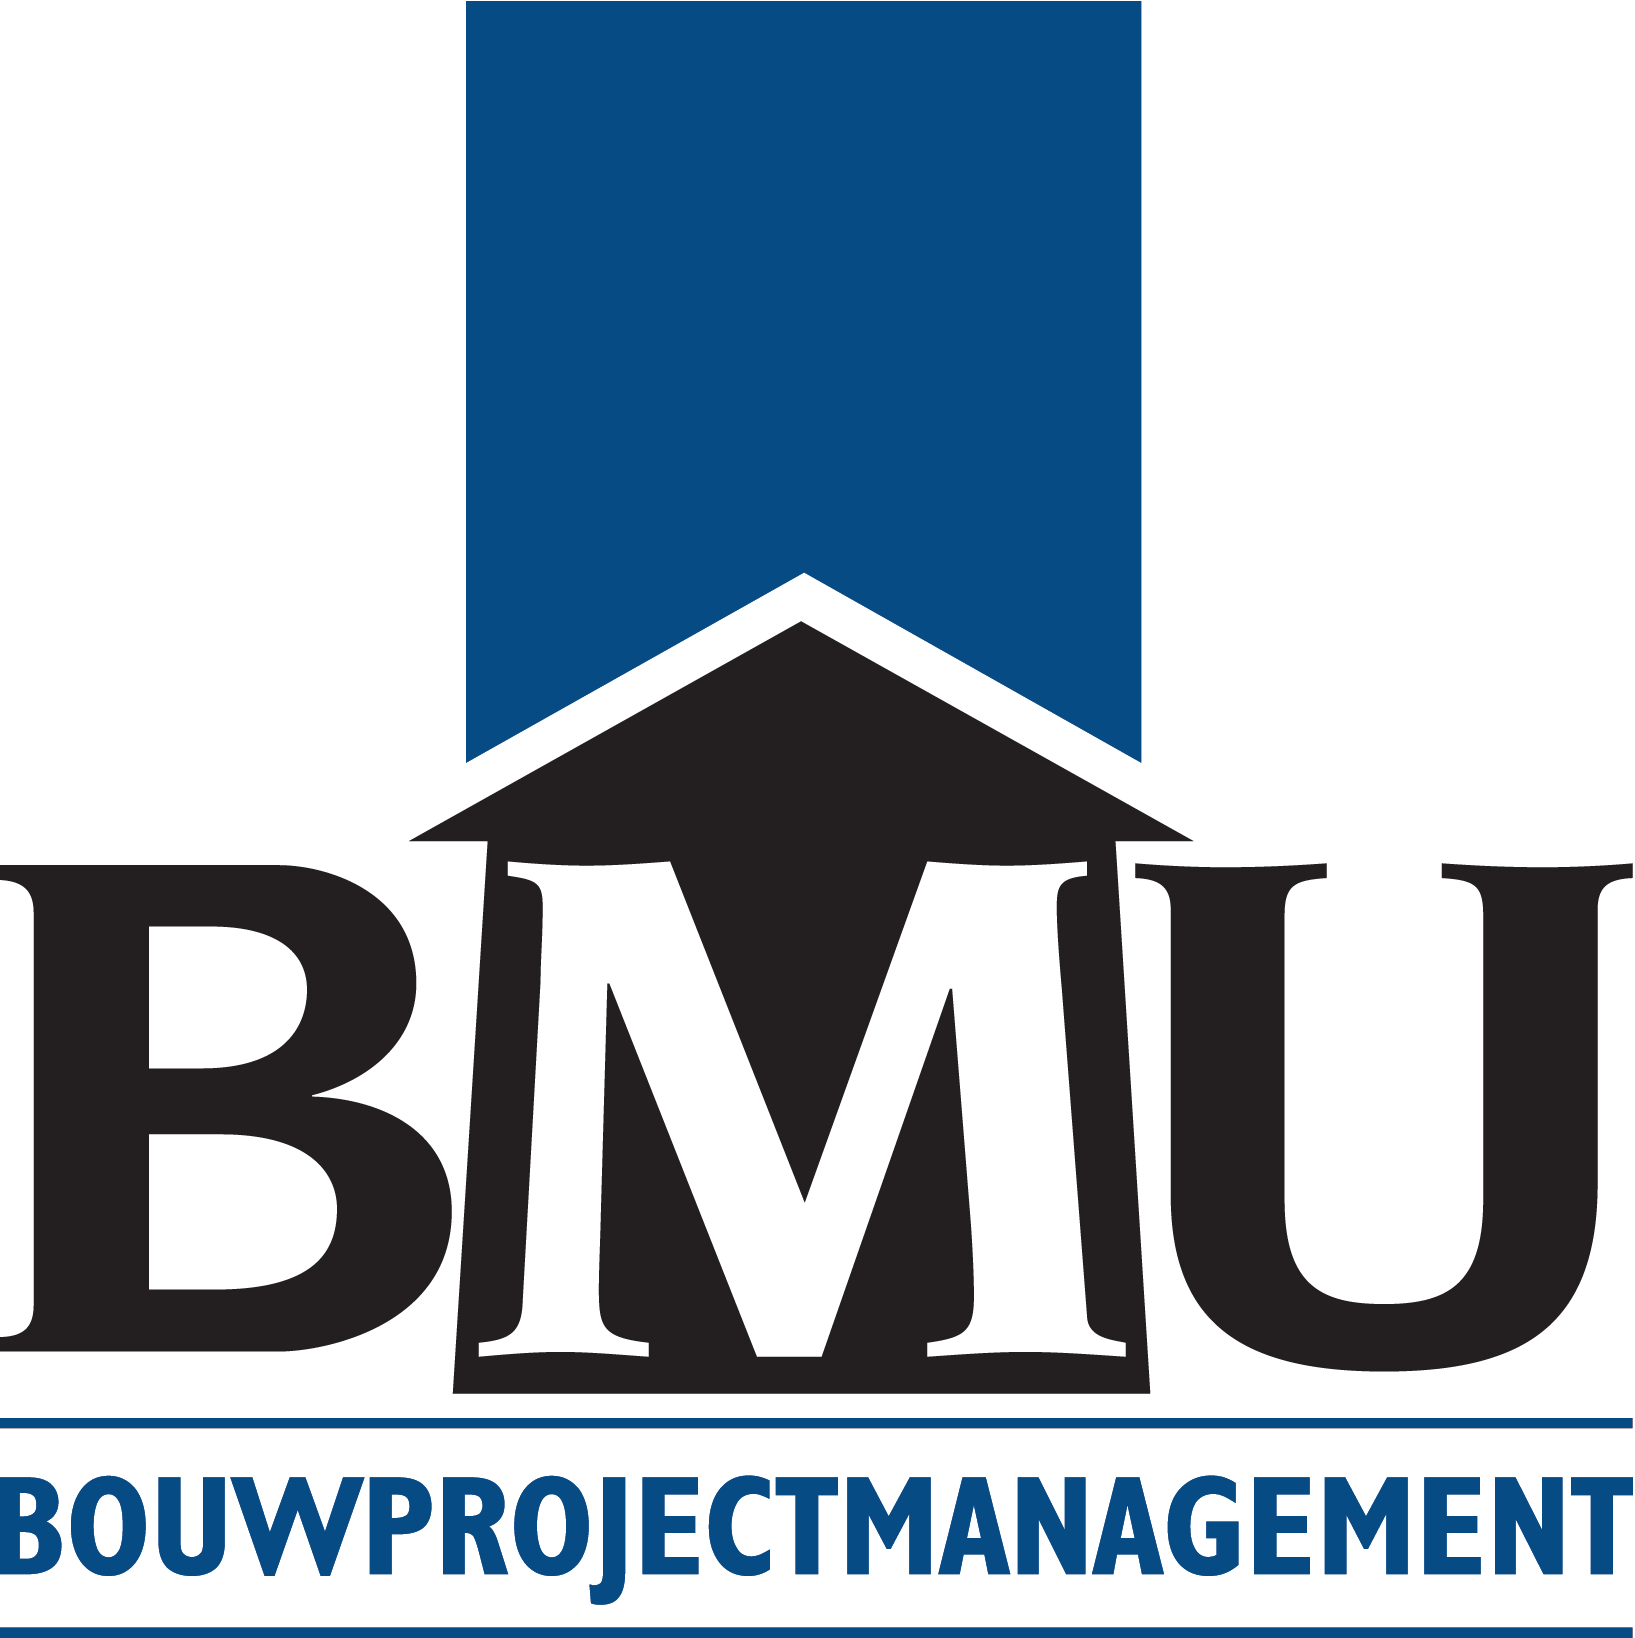 BMU Bouwprojectmanagement